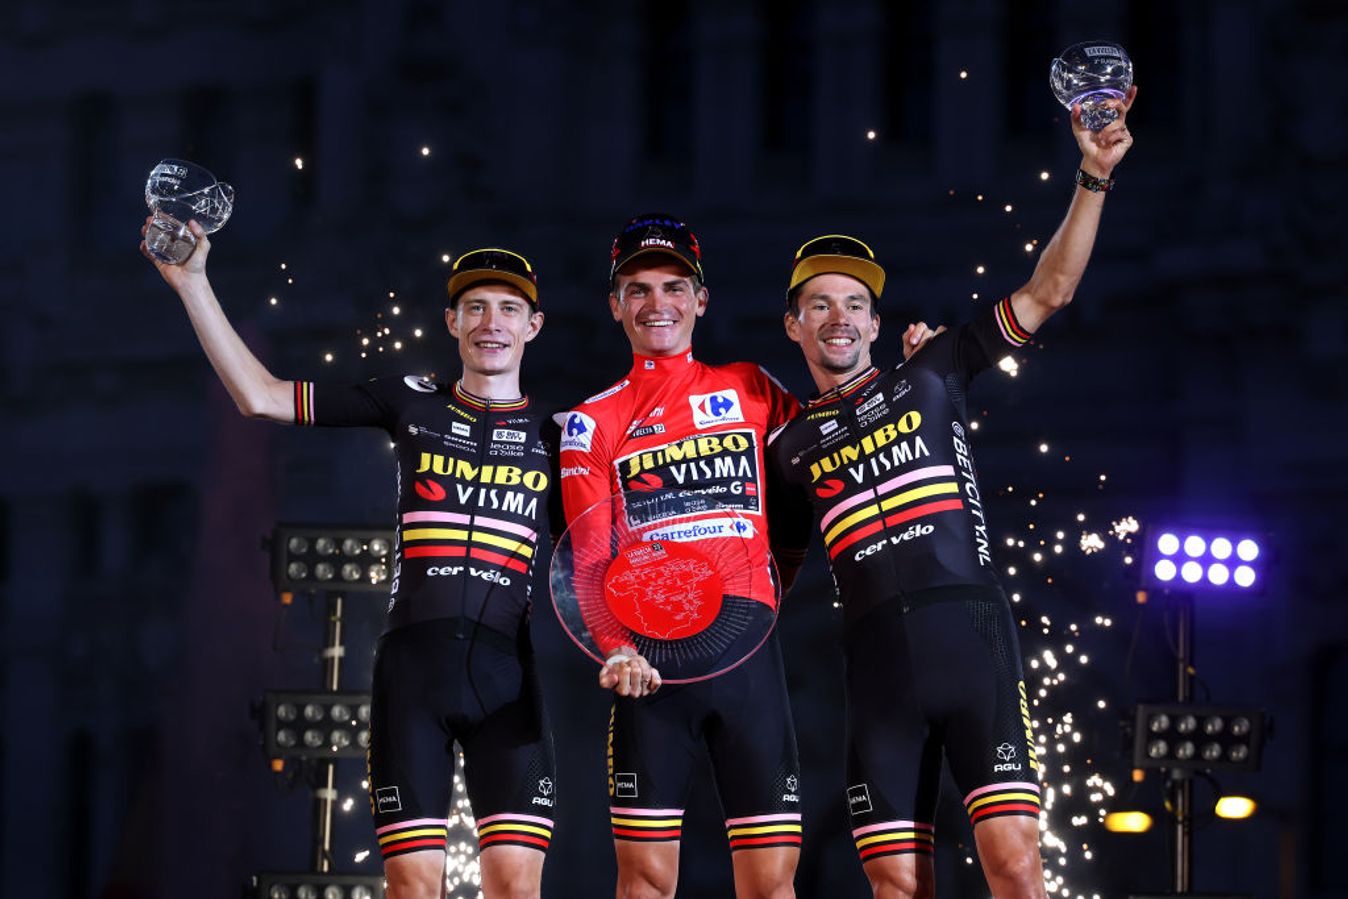 The 2023 Vuelta a España final podium